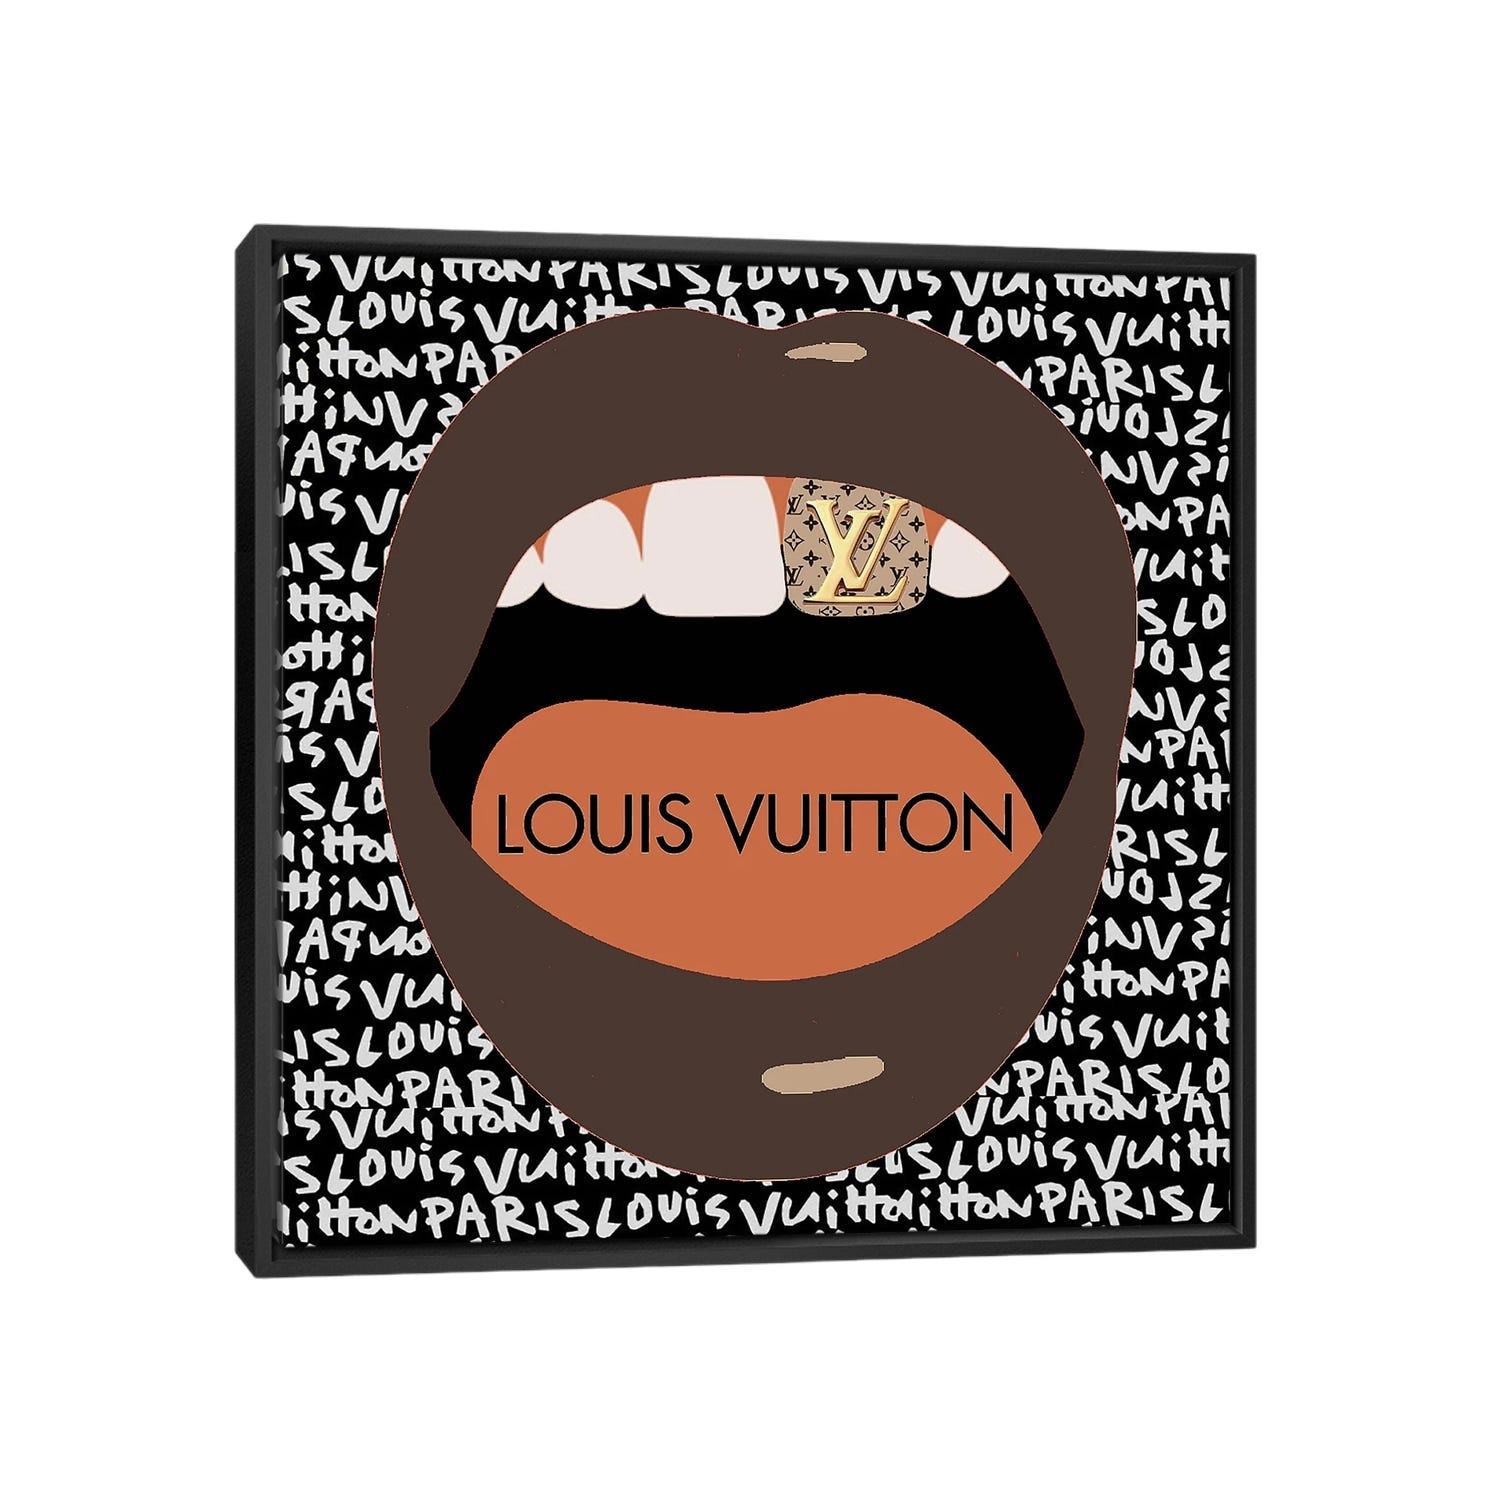 Louis Vuitton Abstract Art Art Print by Julie Schreiber